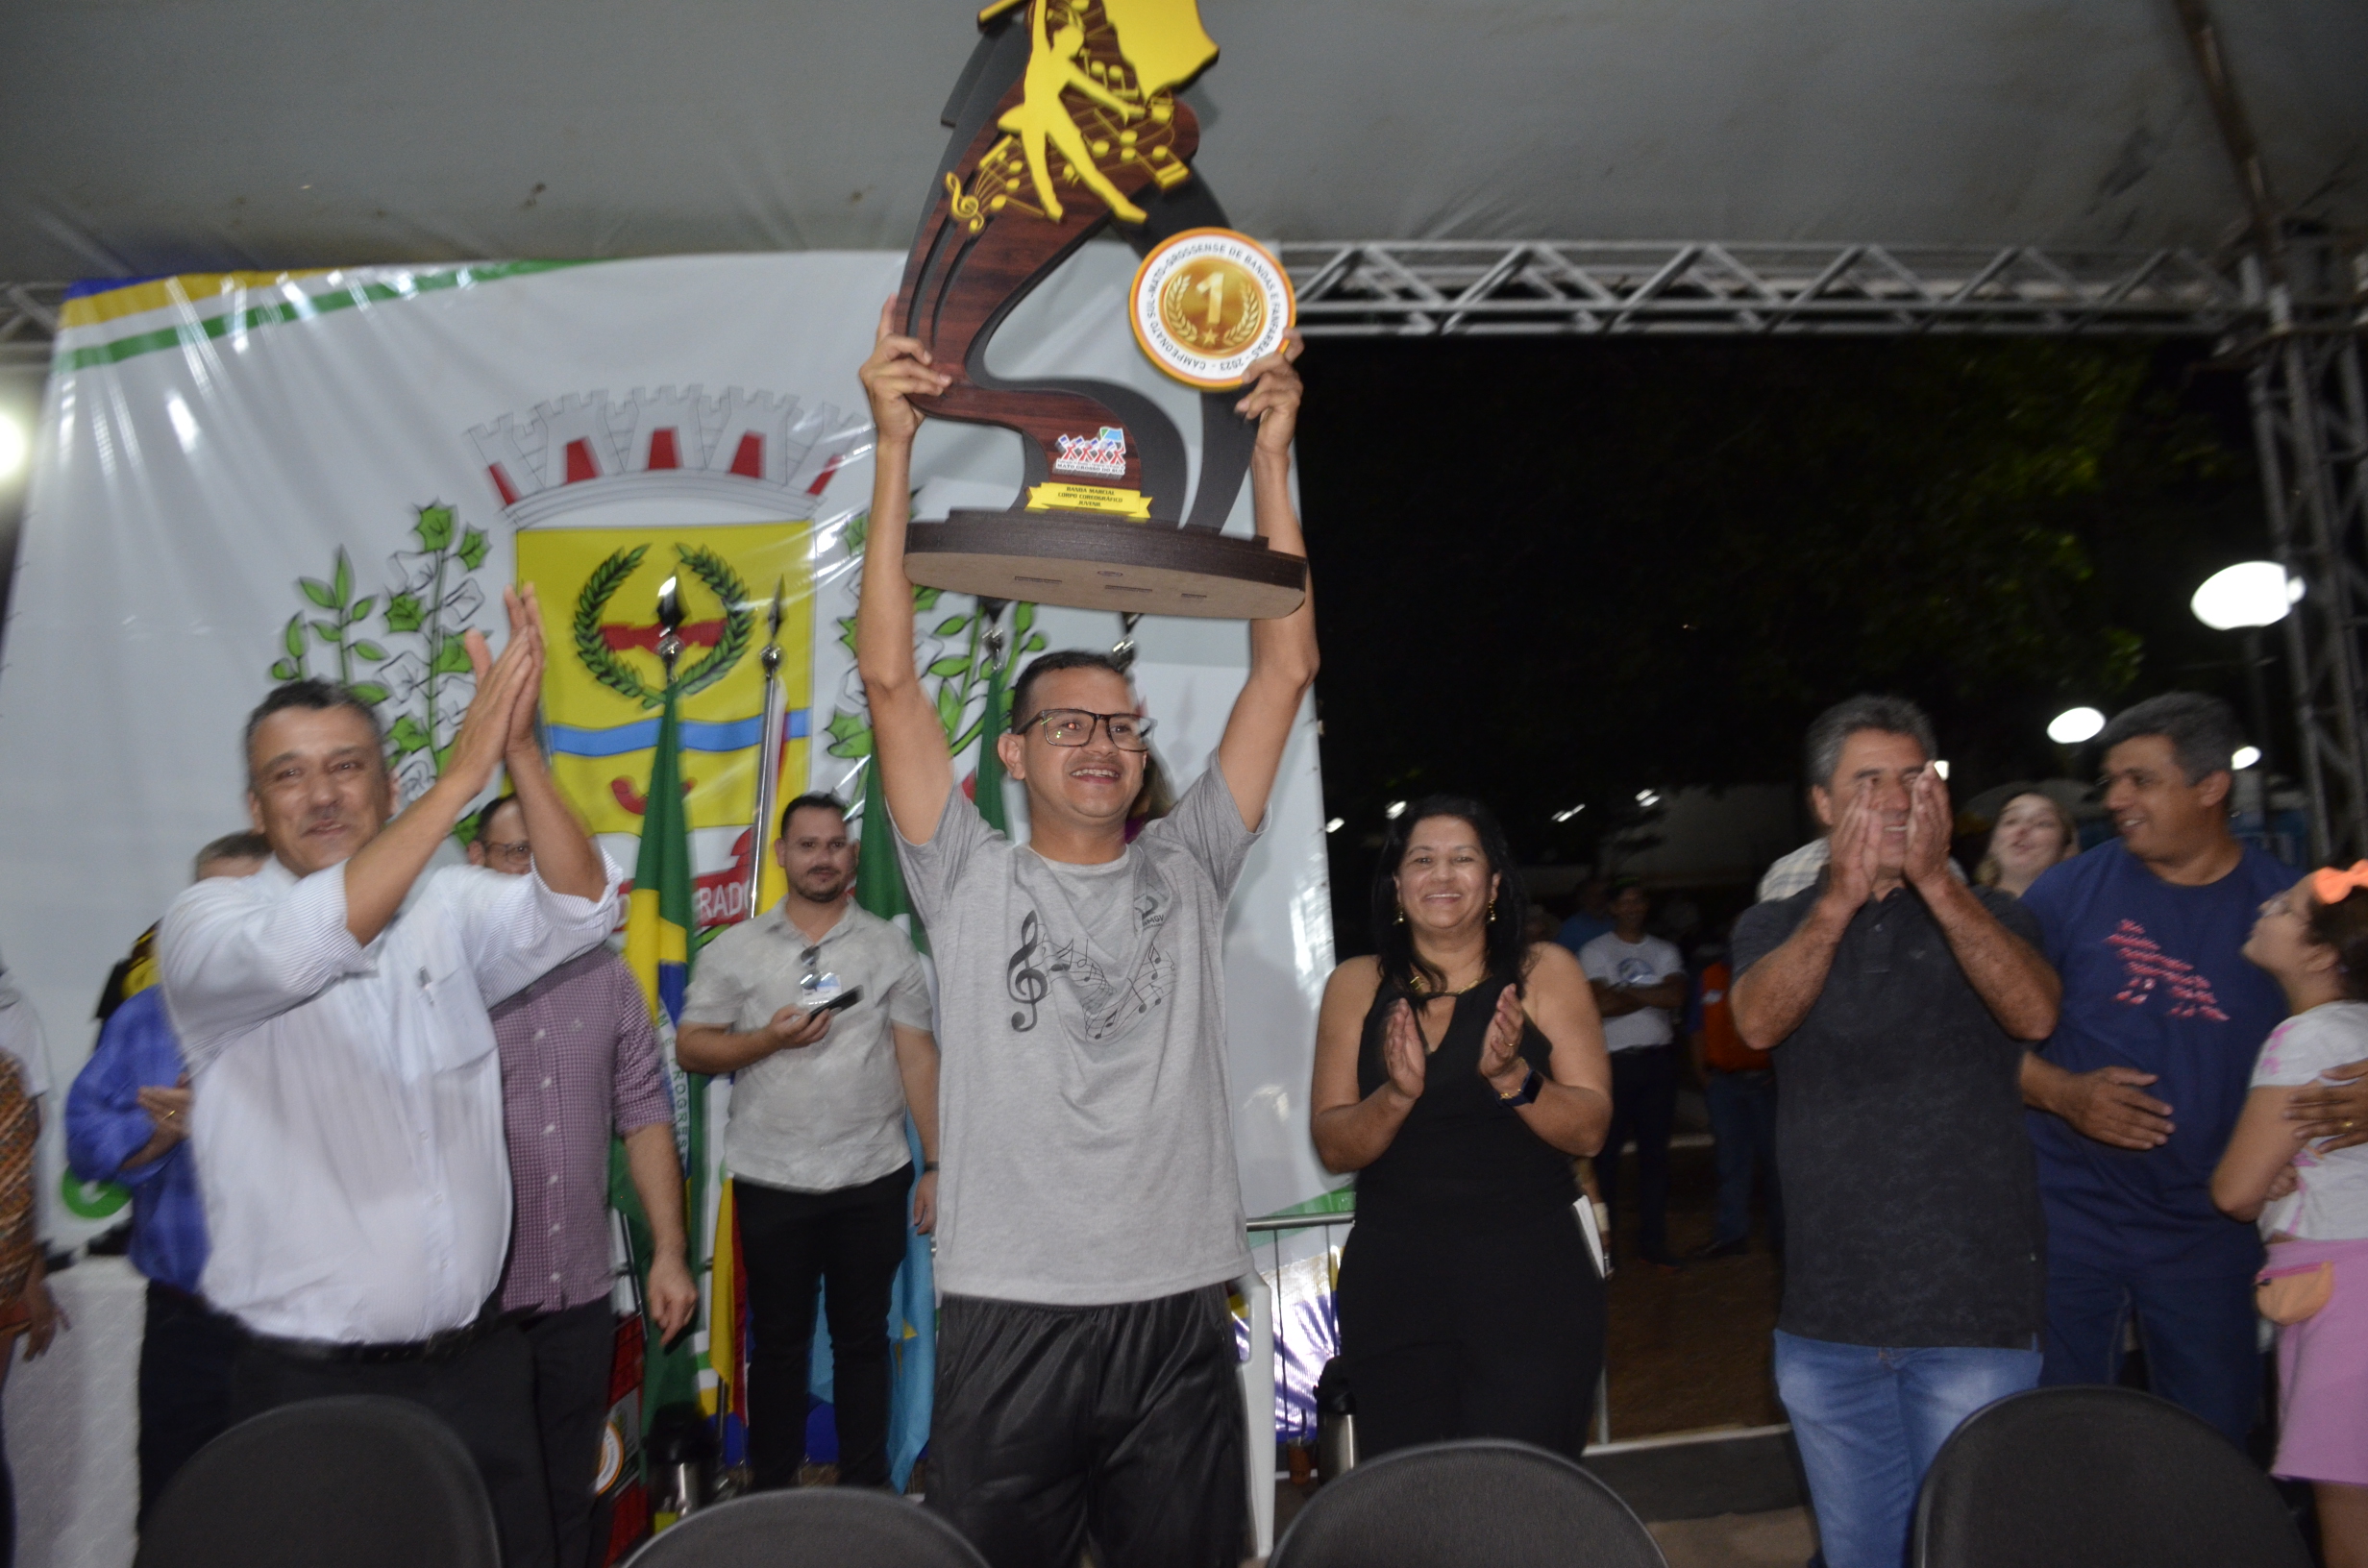 Confira as fotos do Campeonato de Bandas e Fanfarras em Glória de Dourados